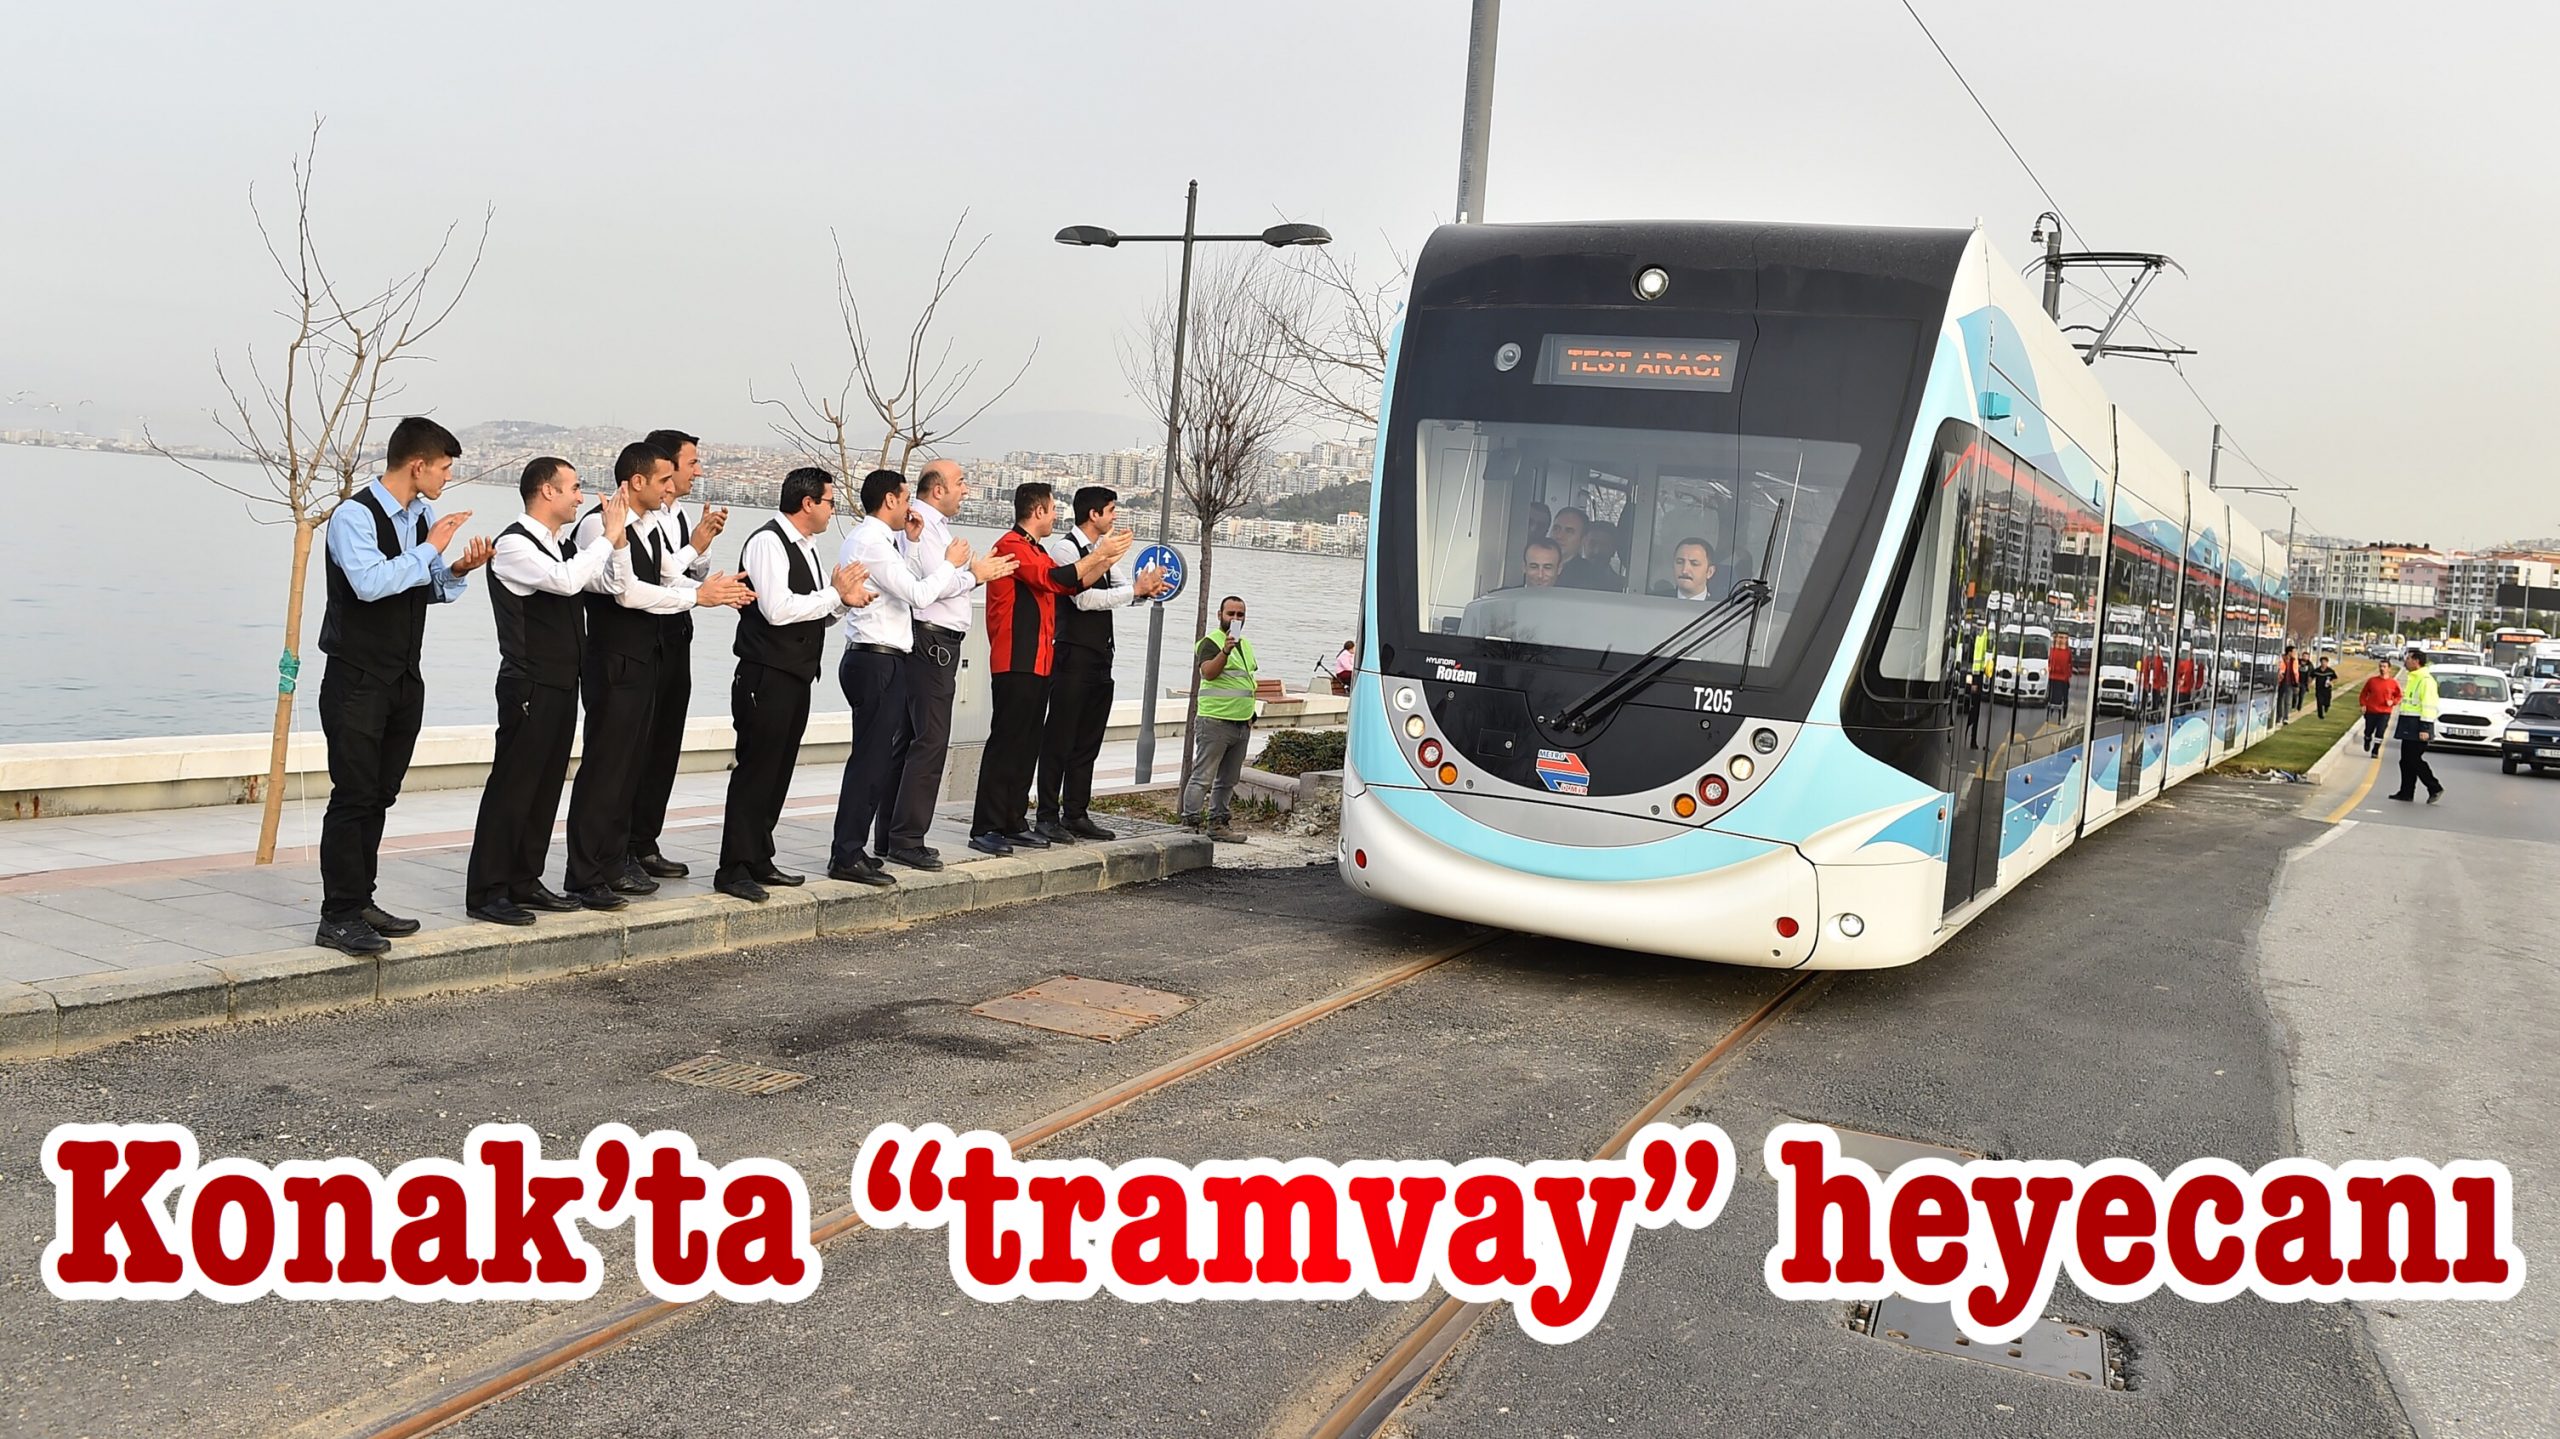 Konak’ta “tramvay” heyecanı